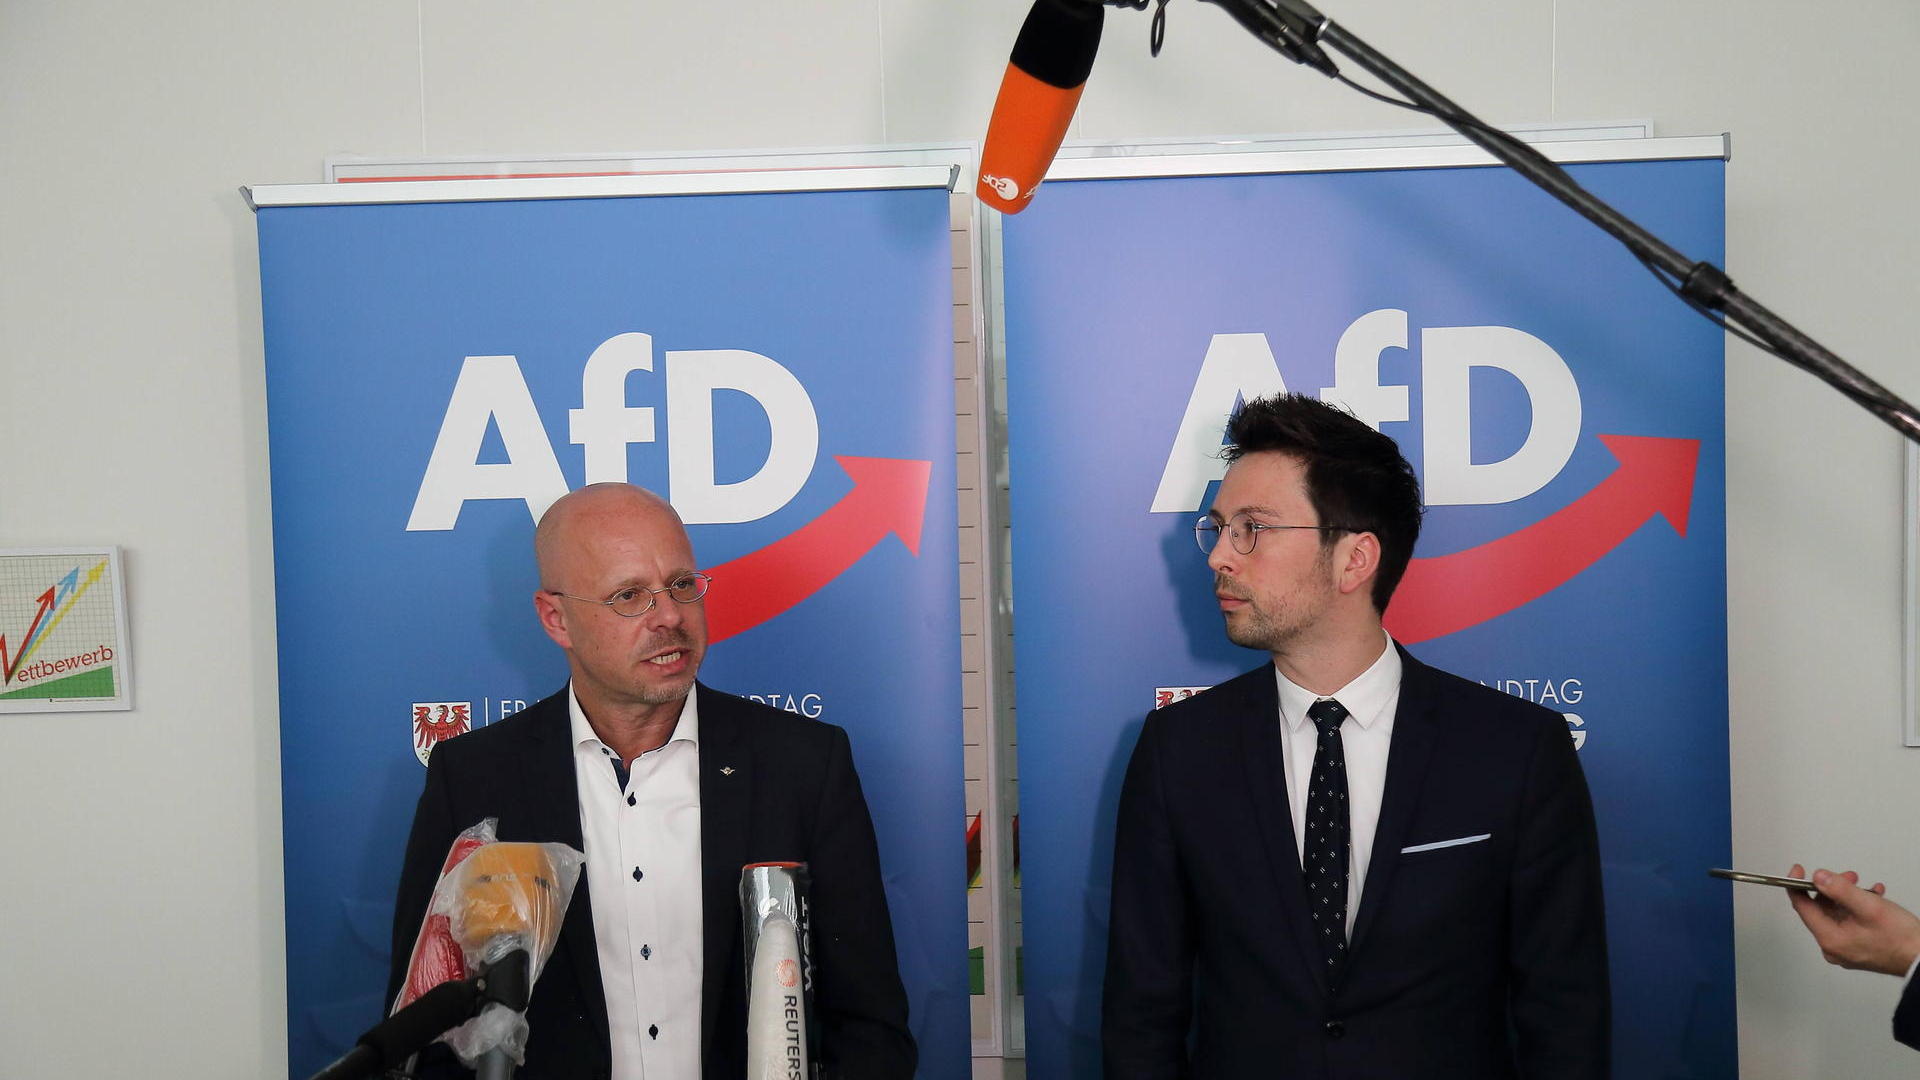 Andreas Kalbitz begrüßt AfD-Parteifreund Dennis Hohloch mit Schlag in die Seite: Krankenhaus